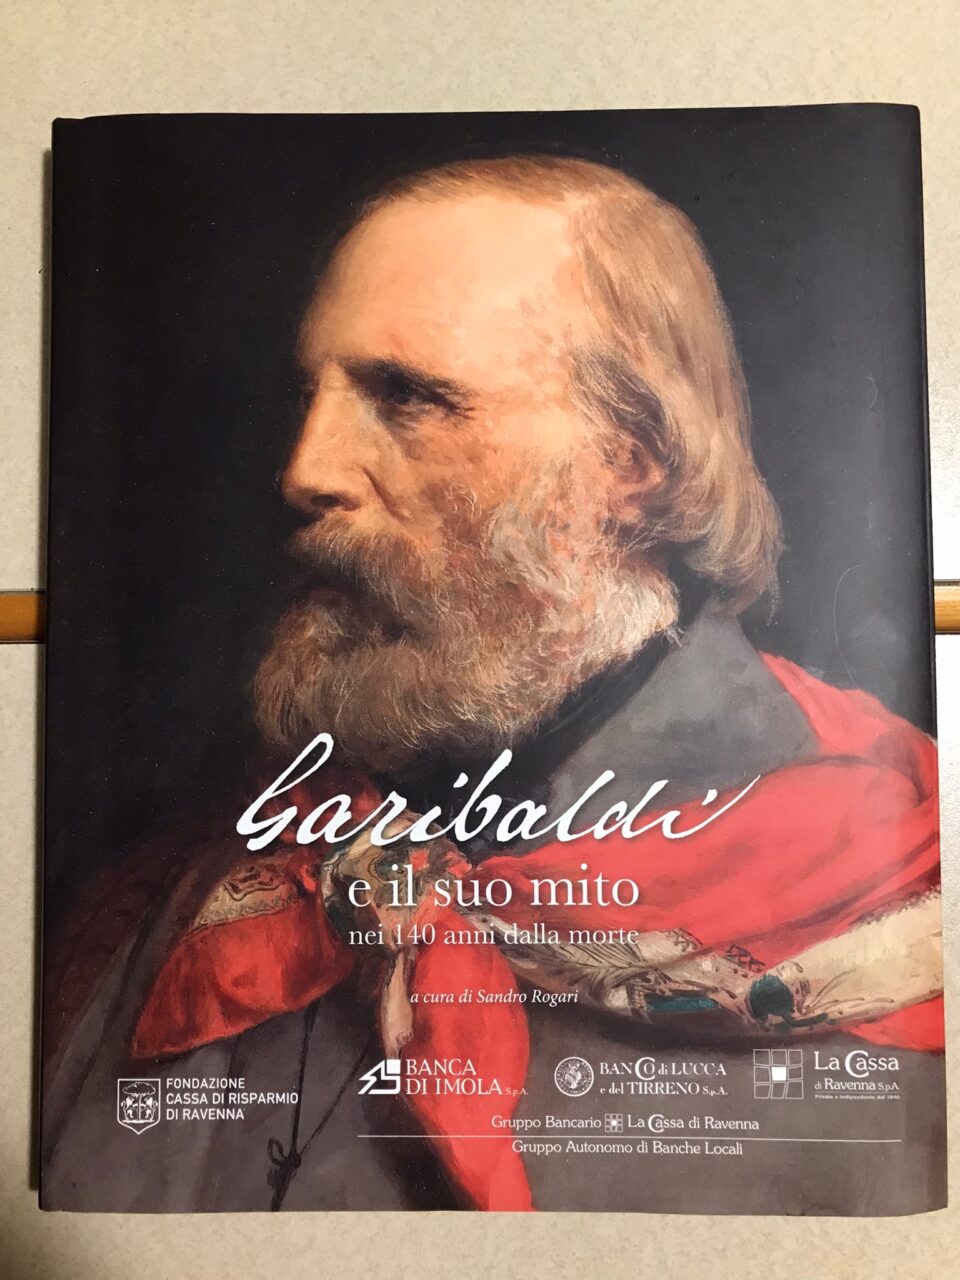 Presentazione di " Garibaldi e il
suo mito, nei 140 anni dalla morte."